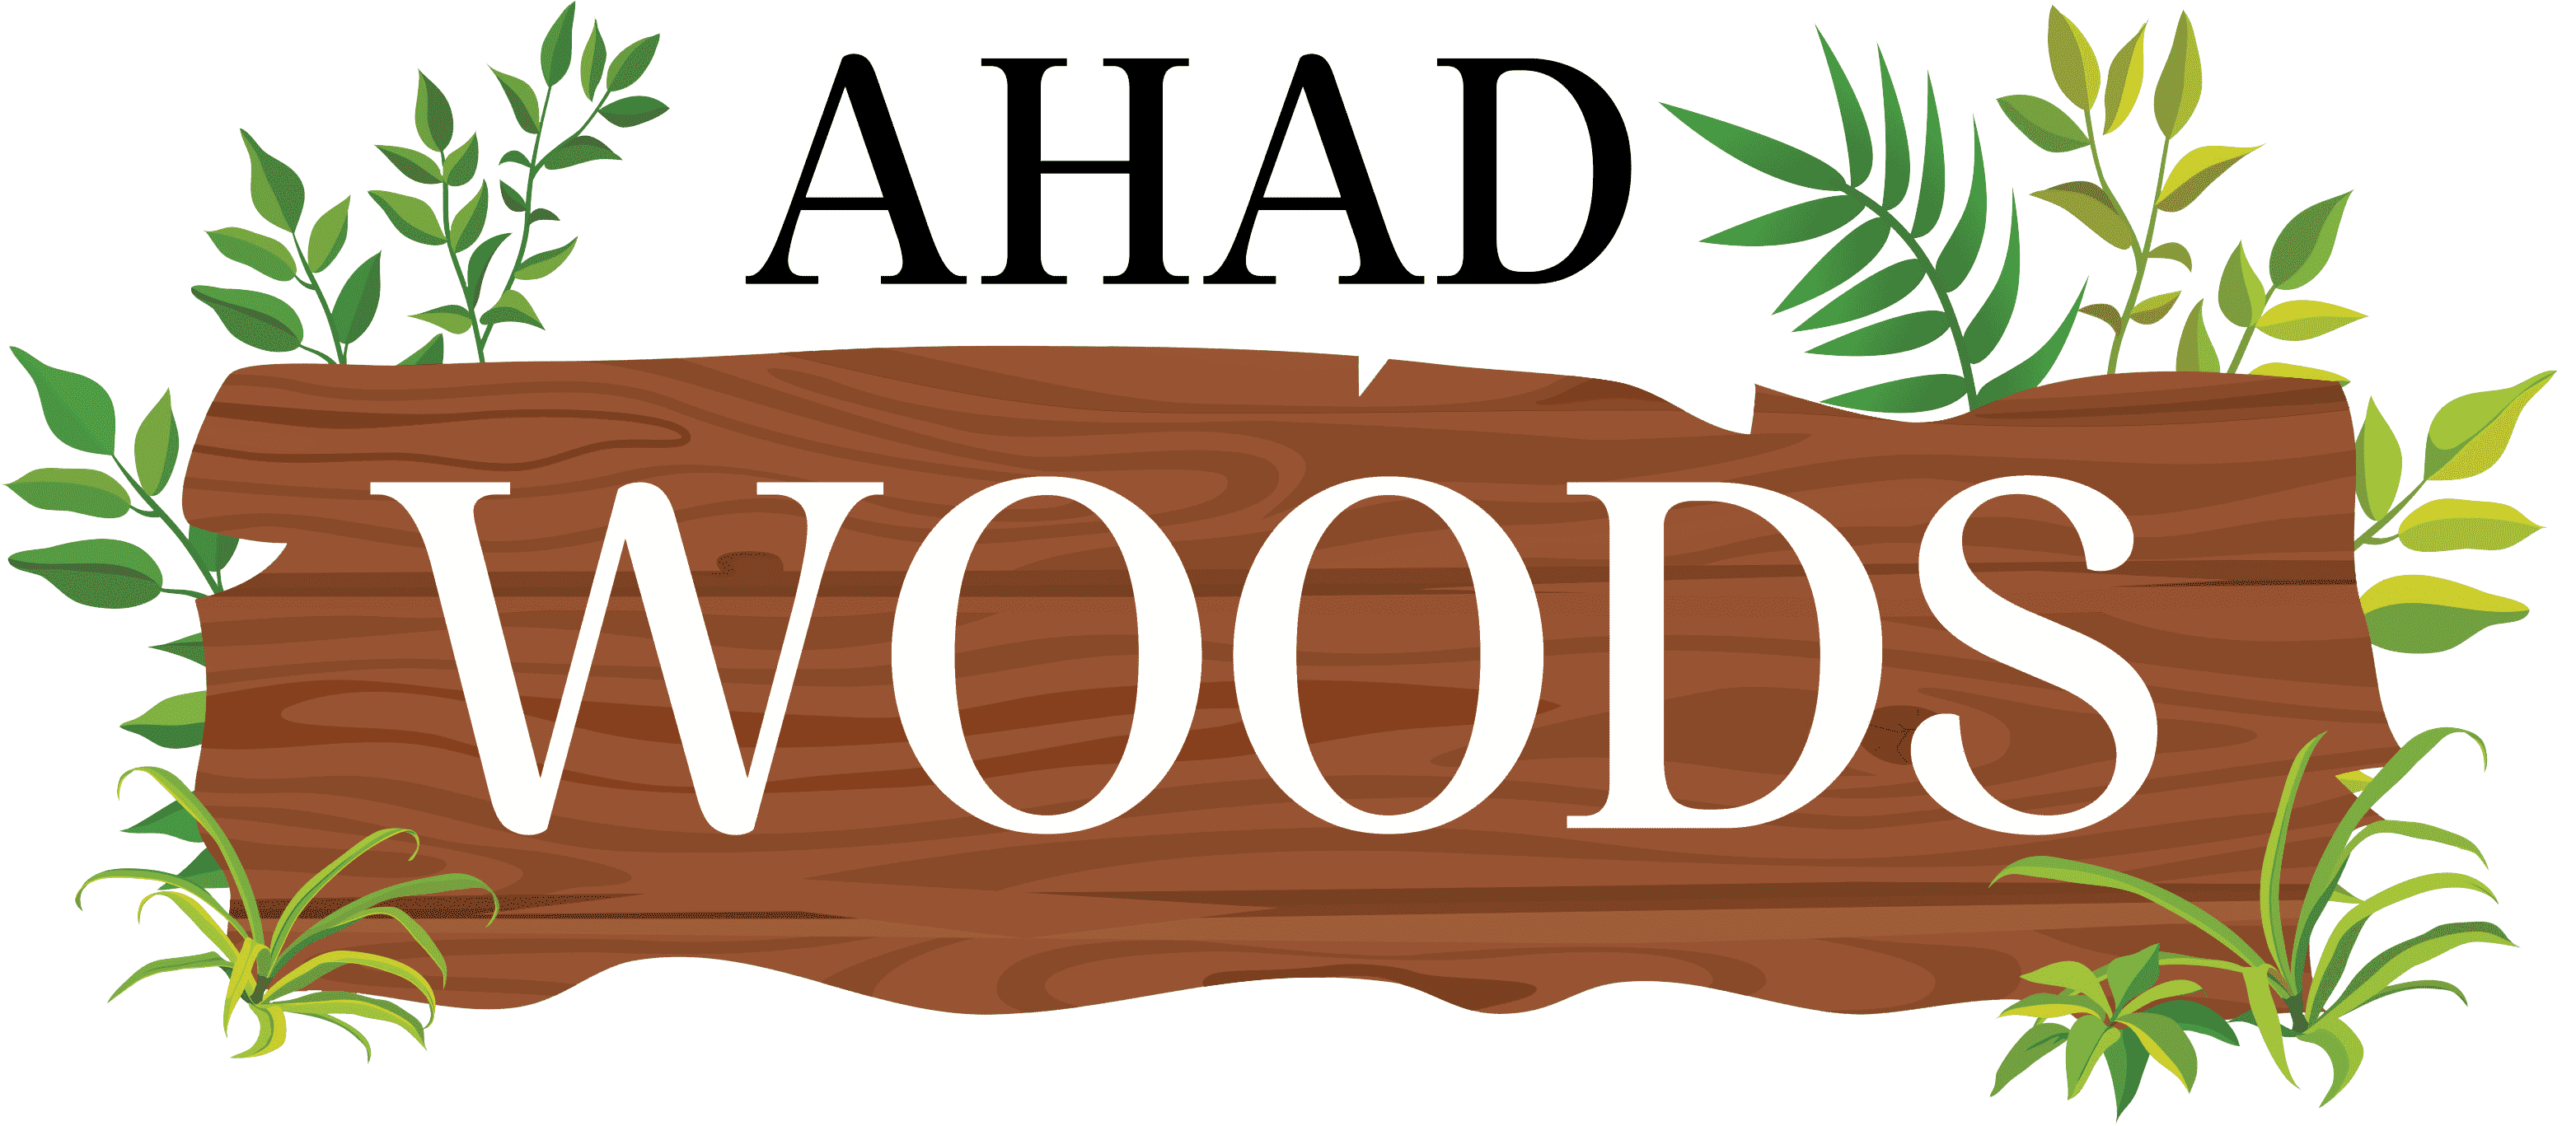 Ahad-Woods-min-2-2